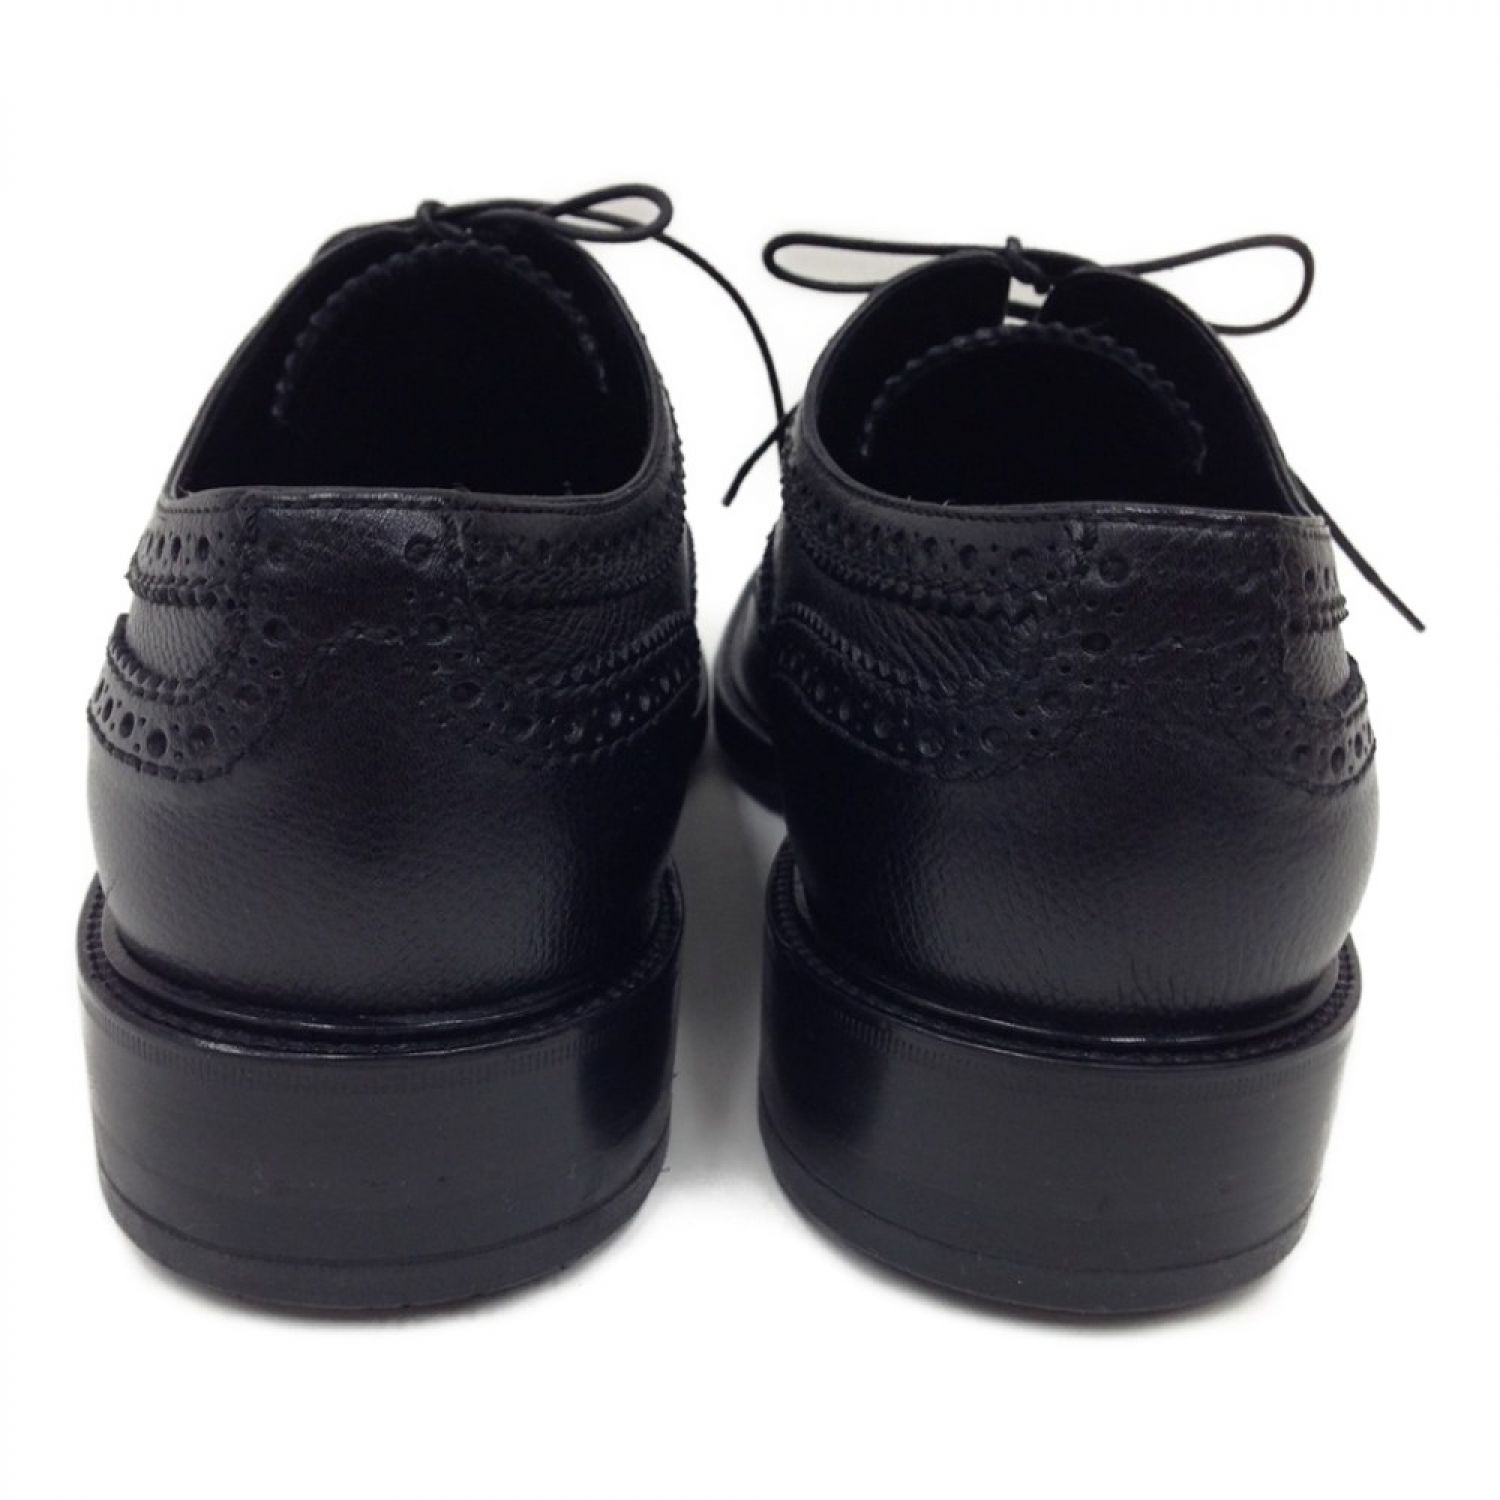 極美品 ルイヴィトン LOUIS VUITTON シューズ レザーシューズ ビジネスシューズ メダリオン キルト 革靴 メンズ 8 1/2M(27cm相当) ブラック